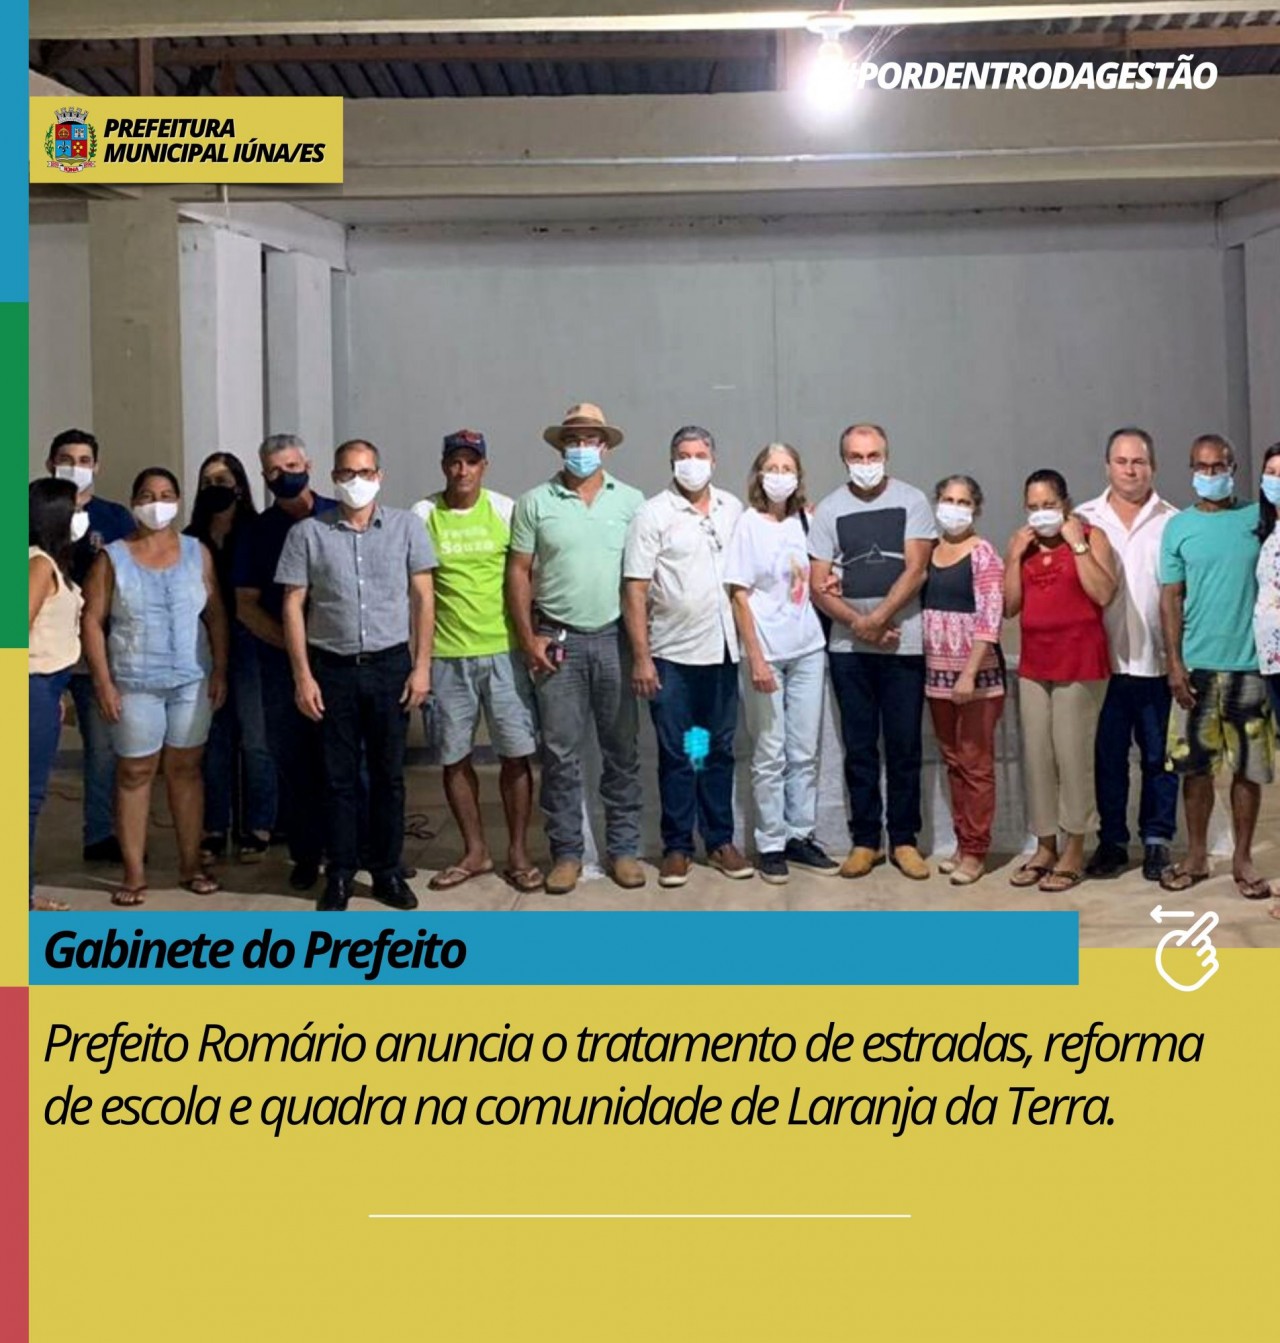 Prefeito Romário anuncia o tratamento de estradas, reforma de escola e quadra na comunidade de Laranja da Terra